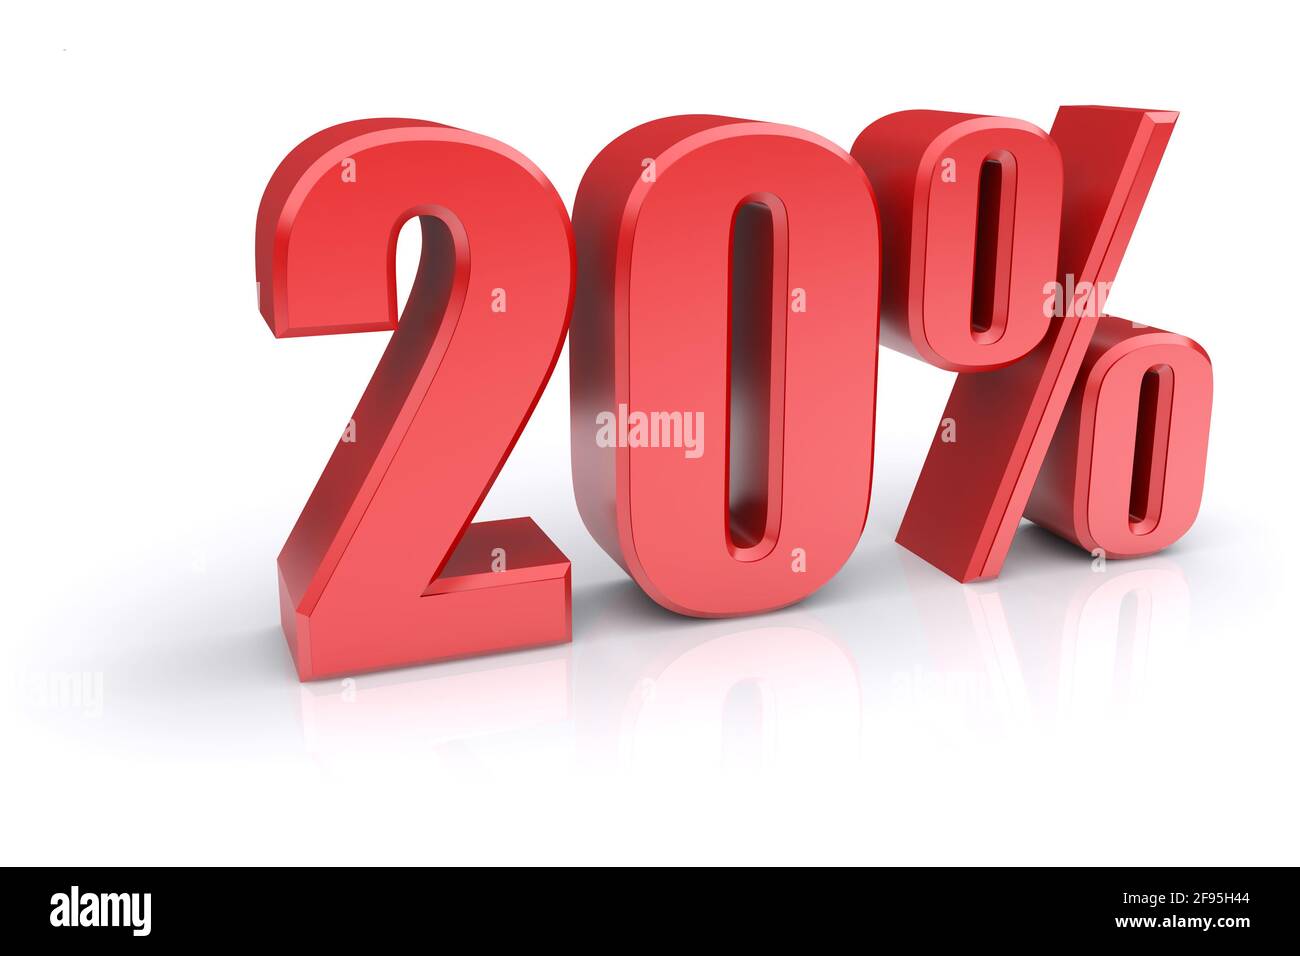 Icona rossa del tasso percentuale del 20% su sfondo bianco. immagine 3d rappresentata Foto Stock